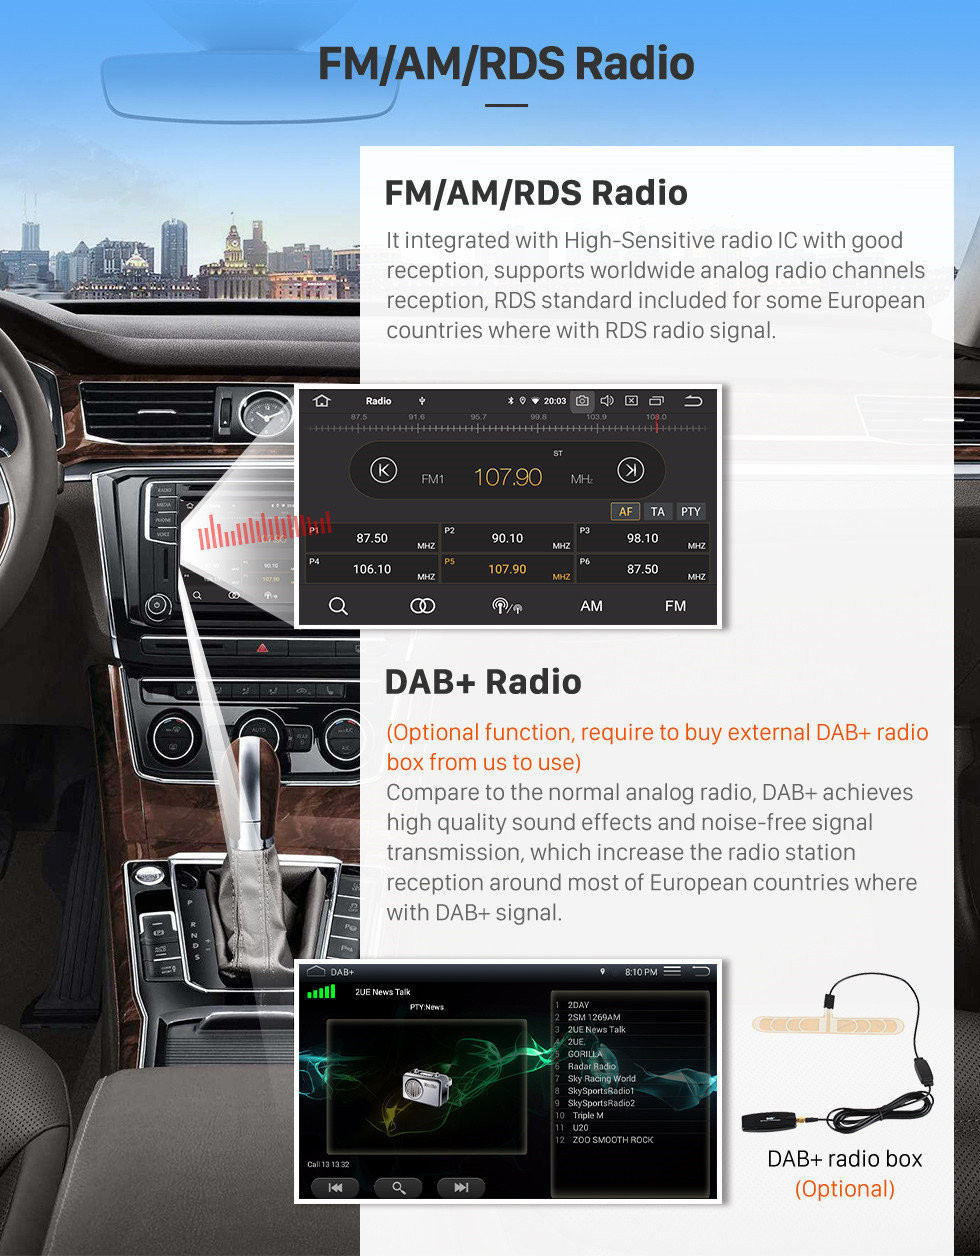 Seicane Android 9.0 Reposição OEM Carro Sistema de Navegação GPS Estéreo para 2005-2010 Mazda 5 com 3G Wifi DVD Rádio Bluetooth USB SD Câmera Retrovisor